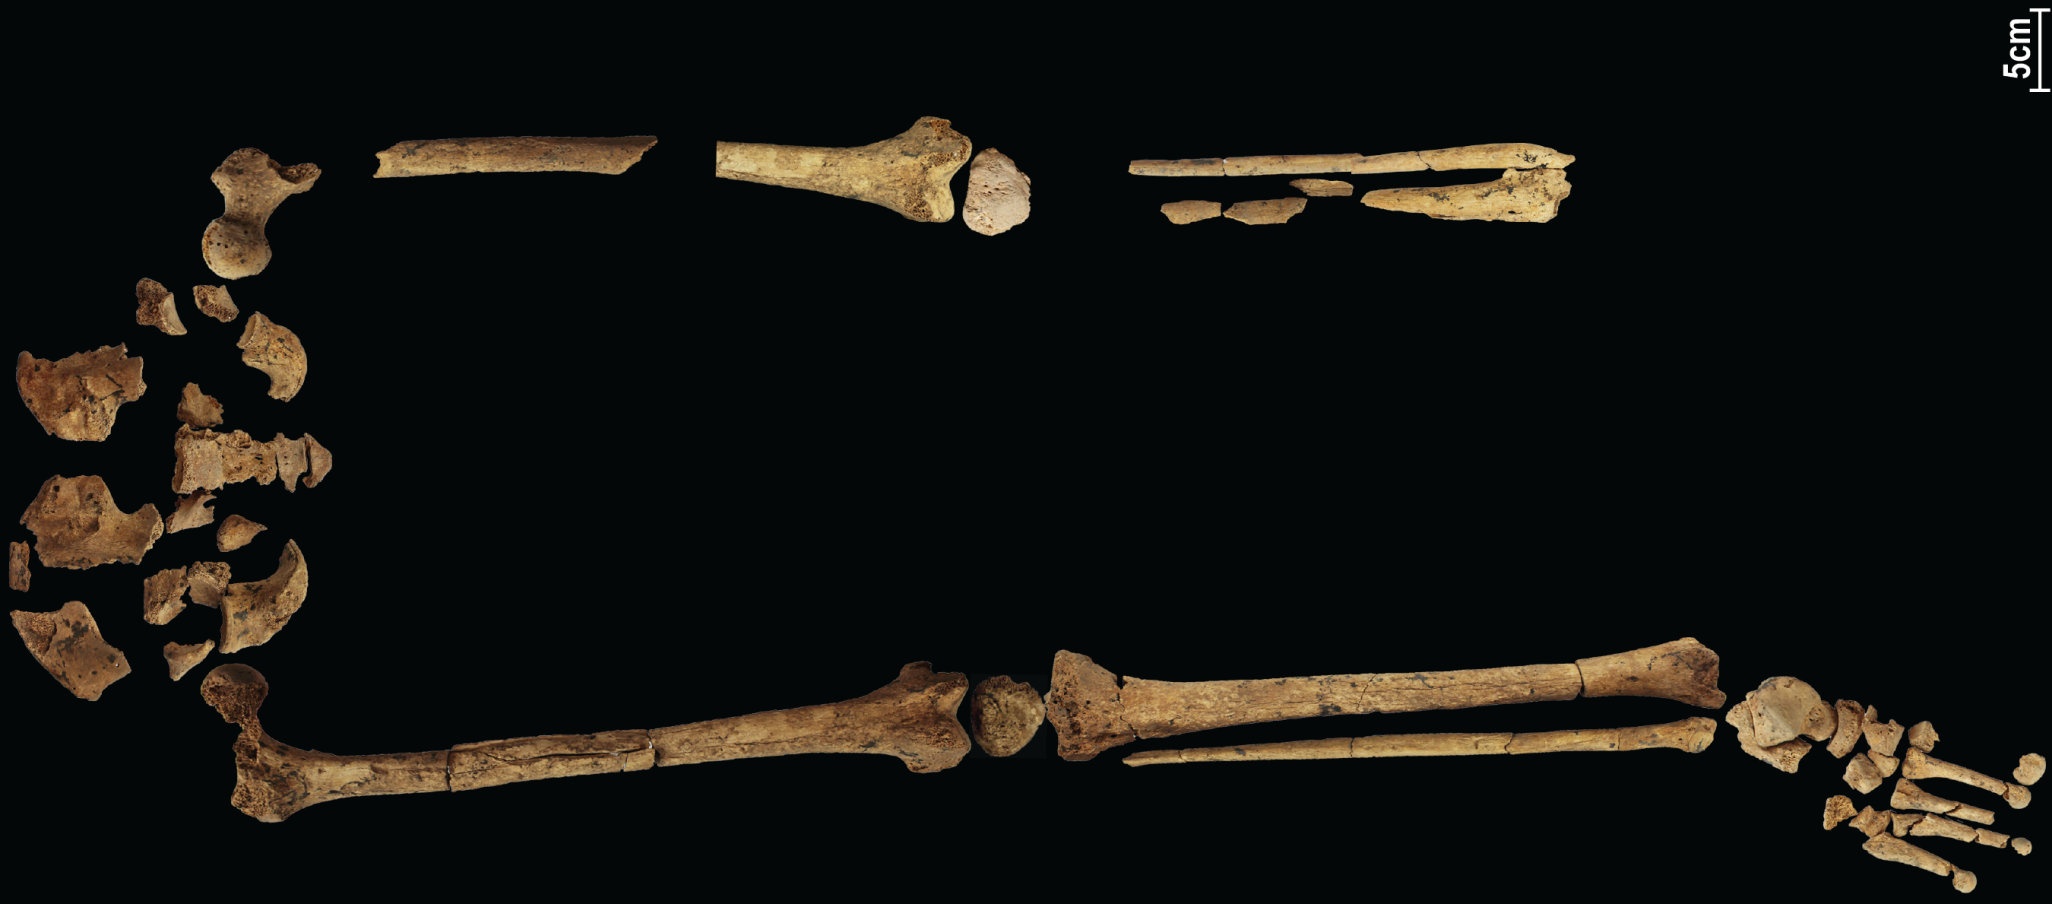 31,000 3 rokov stará kostra zobrazujúca najskorší známy komplexný chirurgický zákrok by mohla prepísať históriu! XNUMX